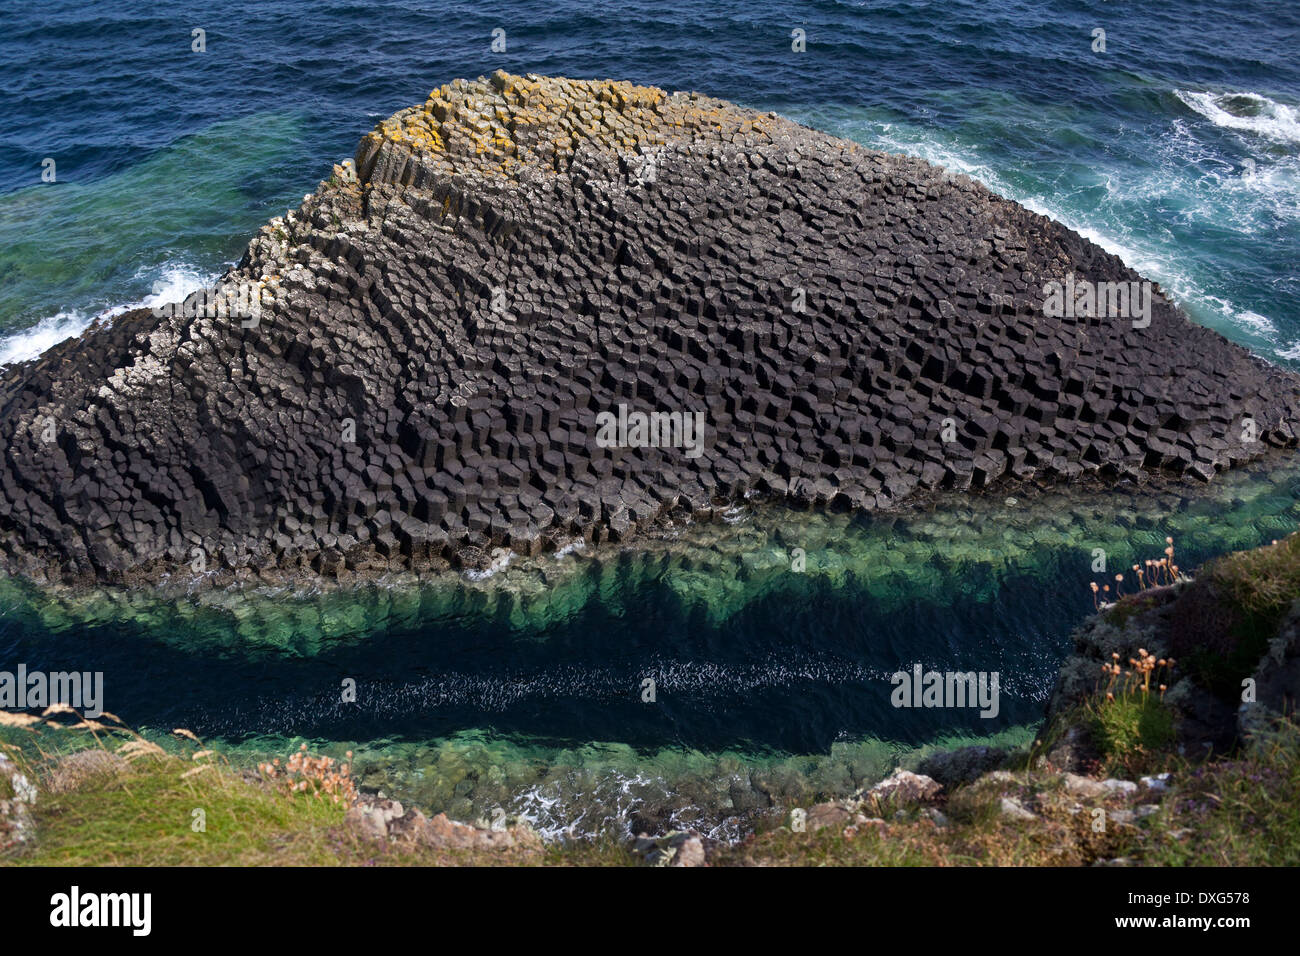 La formation de la roche basaltique de l'île de Staffa dans les îles Treshnish dans les Hébrides intérieures, au large de la côte ouest de l'Ecosse Banque D'Images